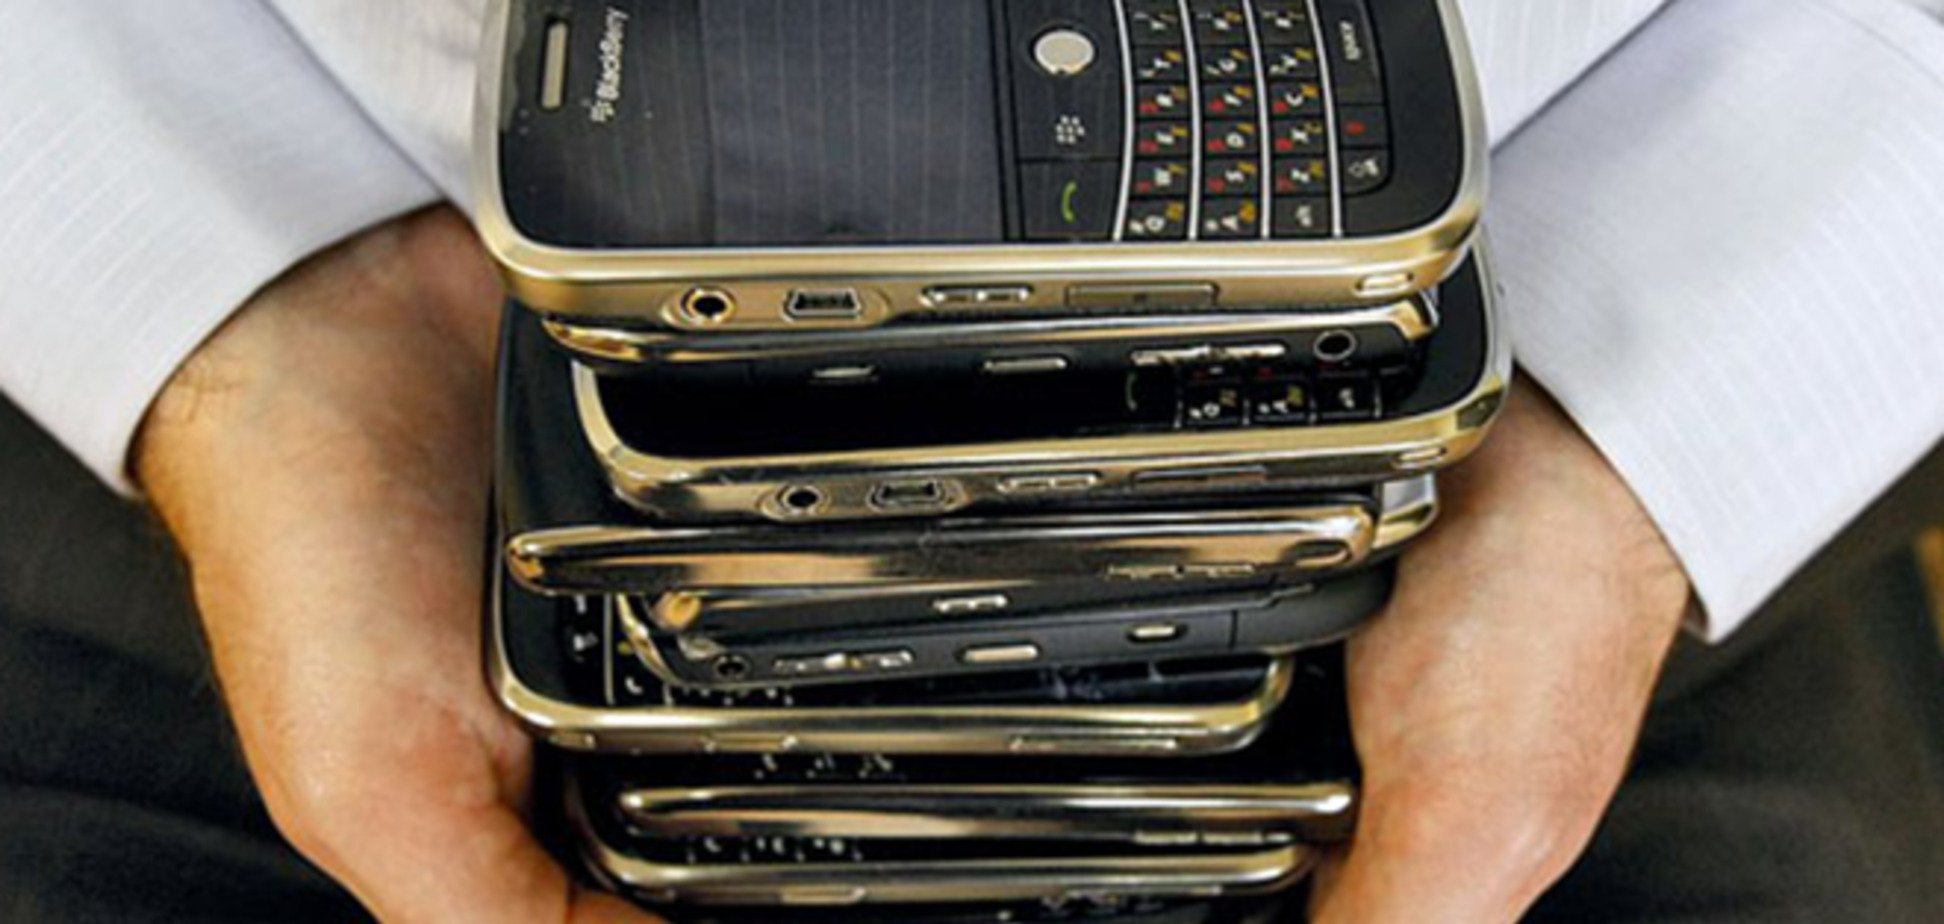 Операторы мобильной связи технически готовы отключать краденые телефоны